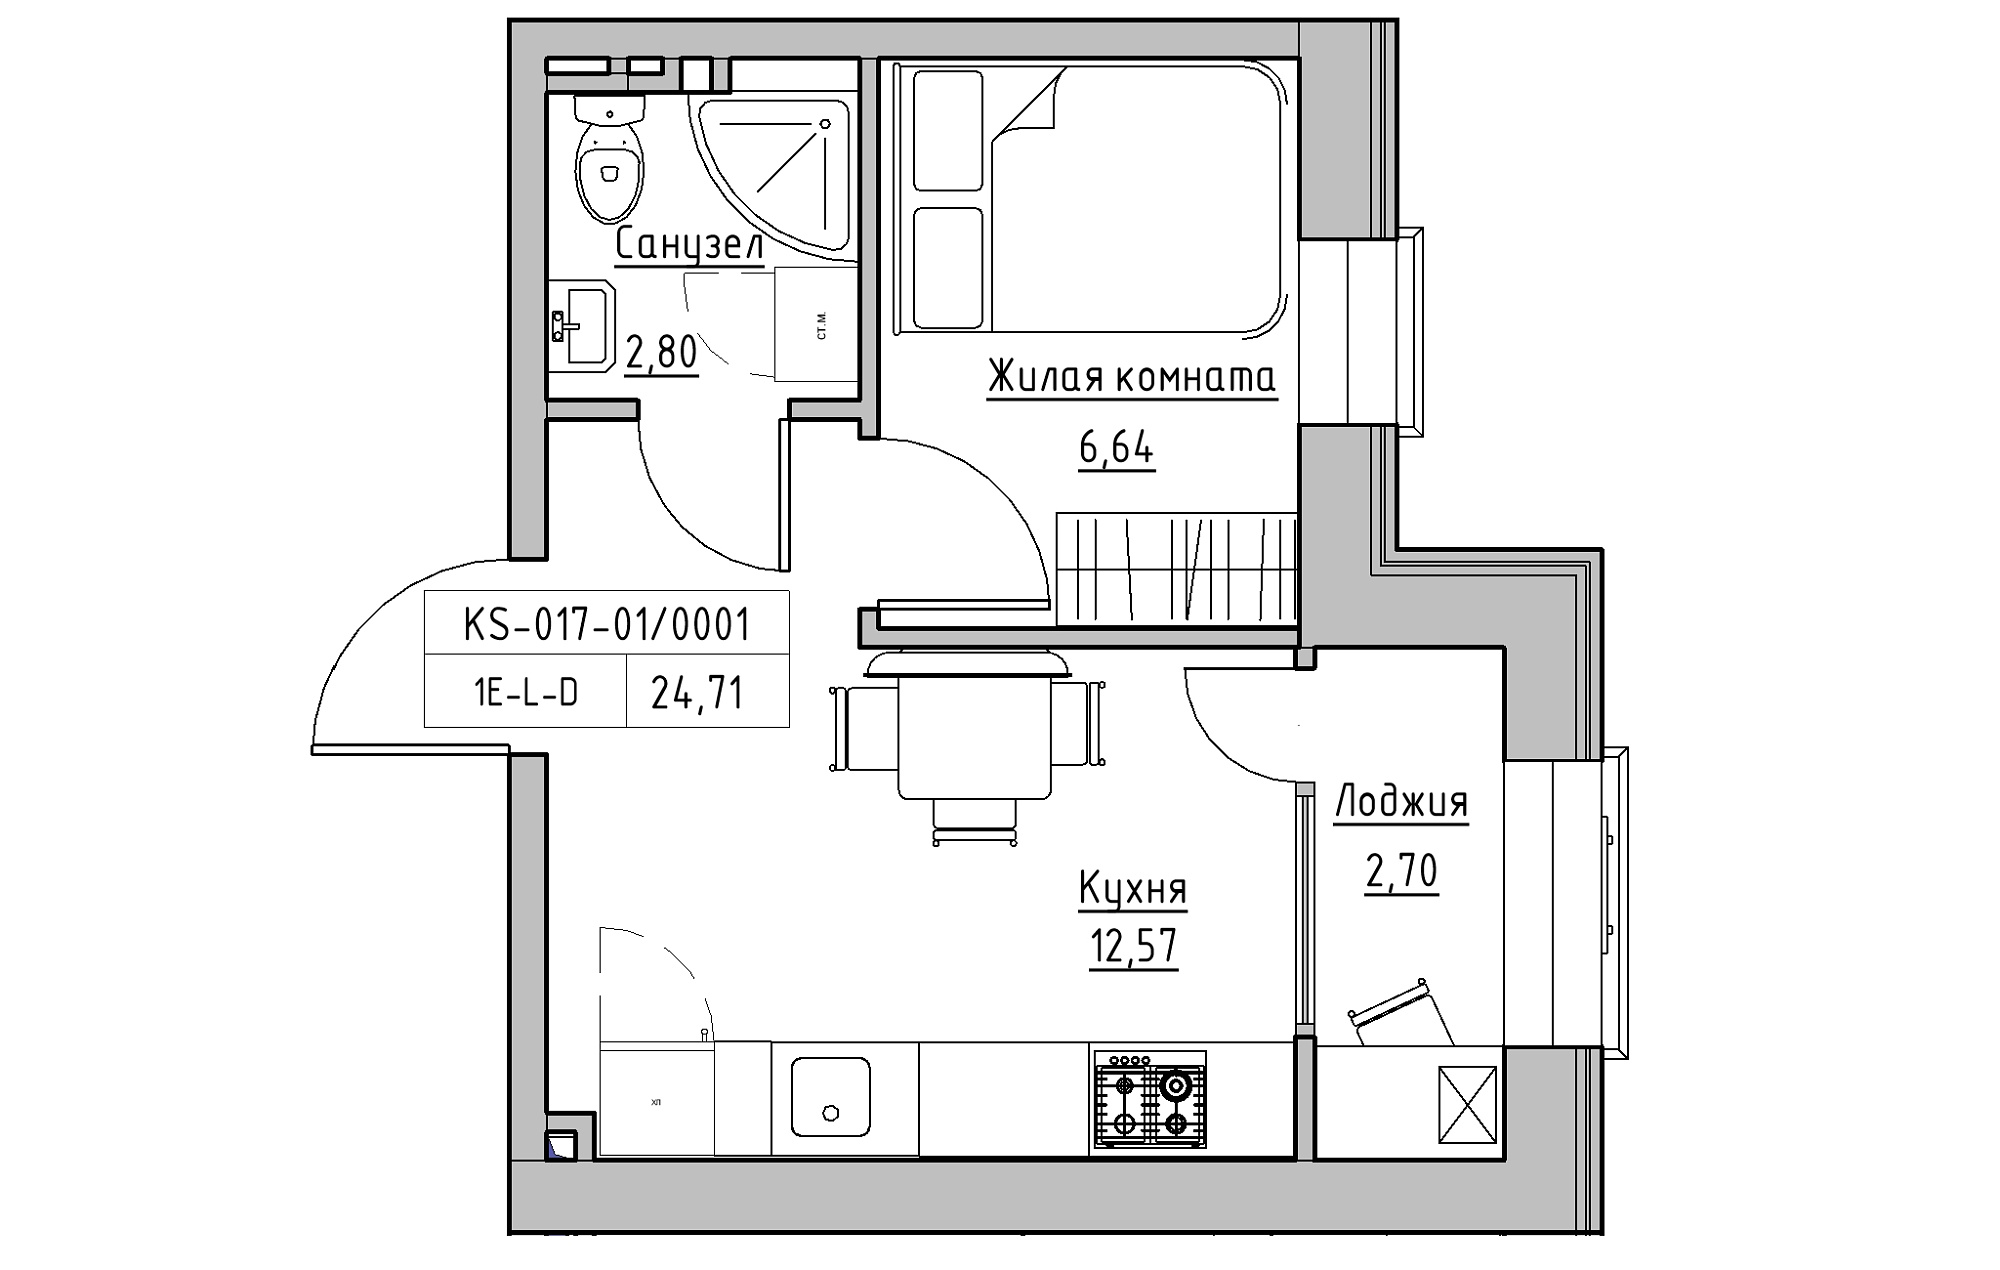 Планування 1-к квартира площею 24.71м2, KS-017-01/0001.